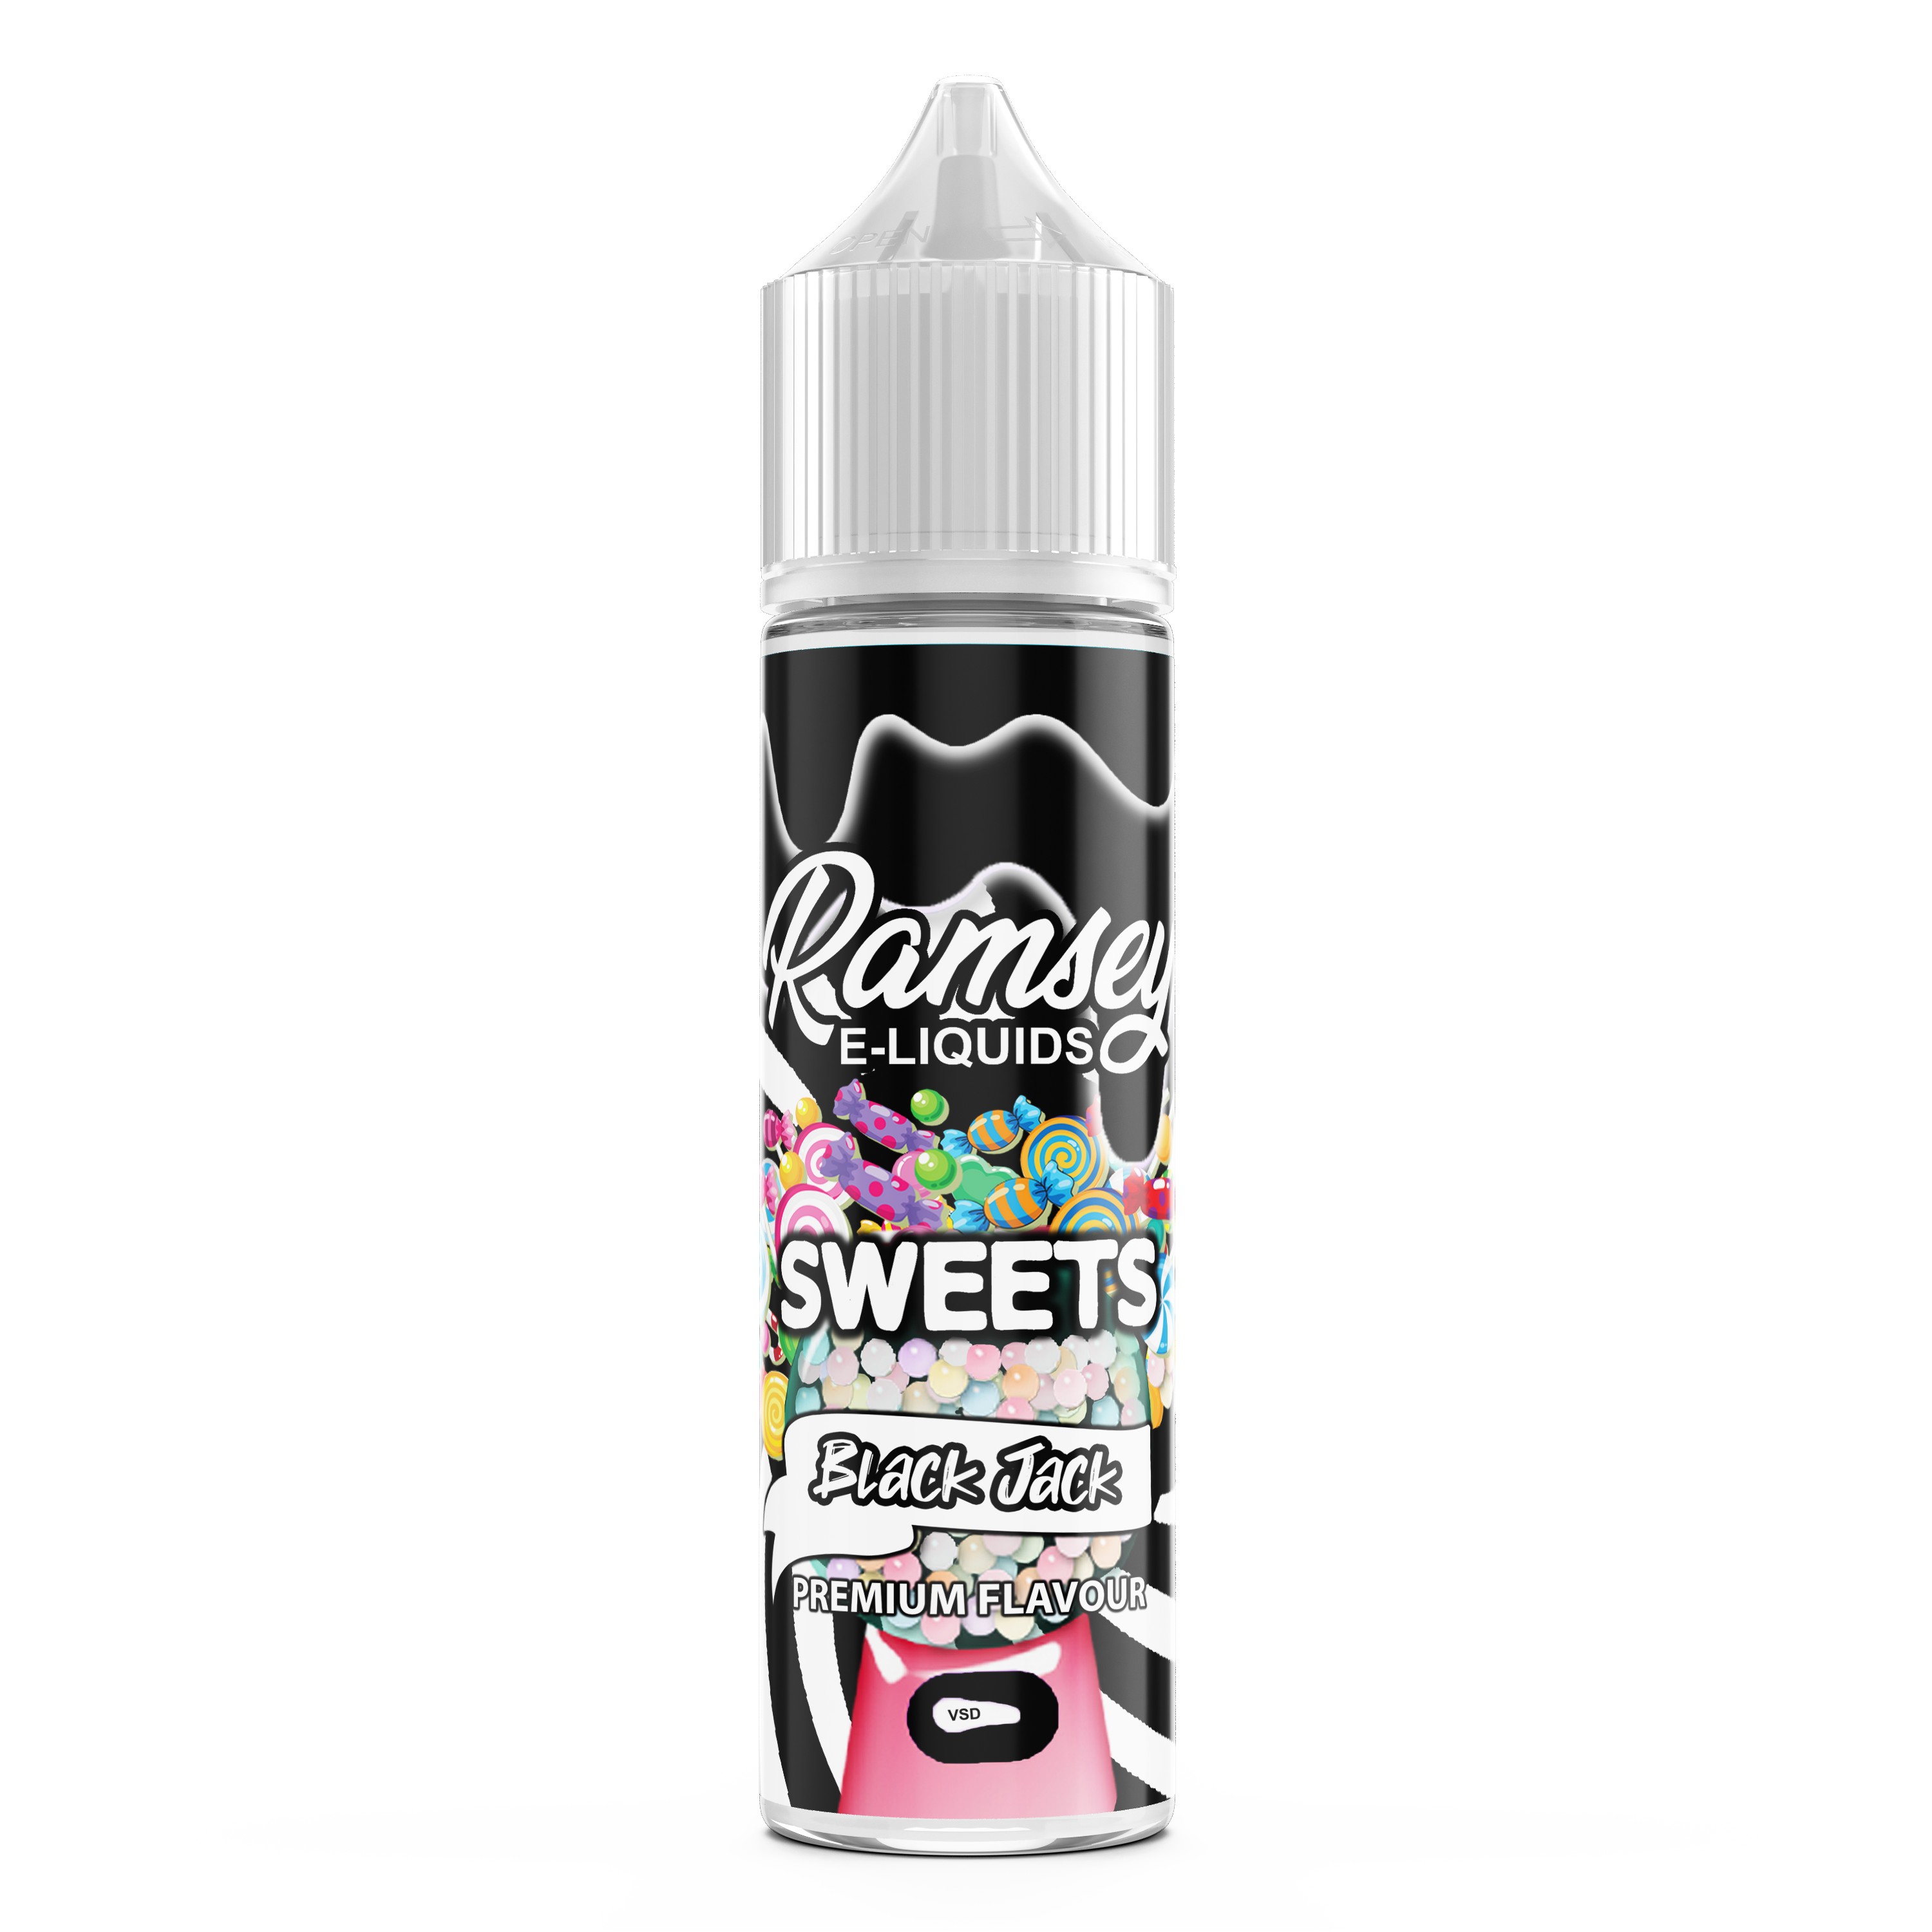 Ramsey E-Liquids Sweets Blackjack 0mg 50ml Shortfill E-Liquid